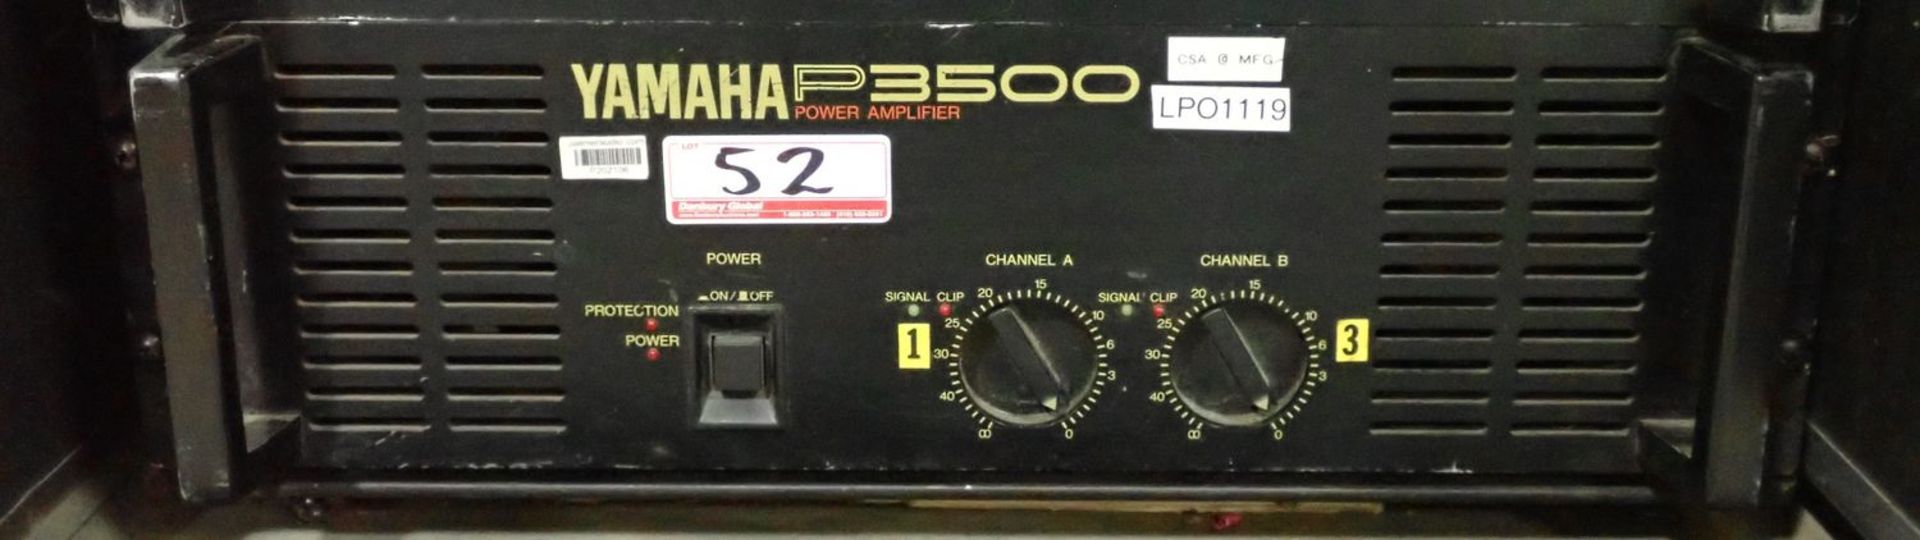 YAMAHA P3500 2-CH POWER AMPLIFIER